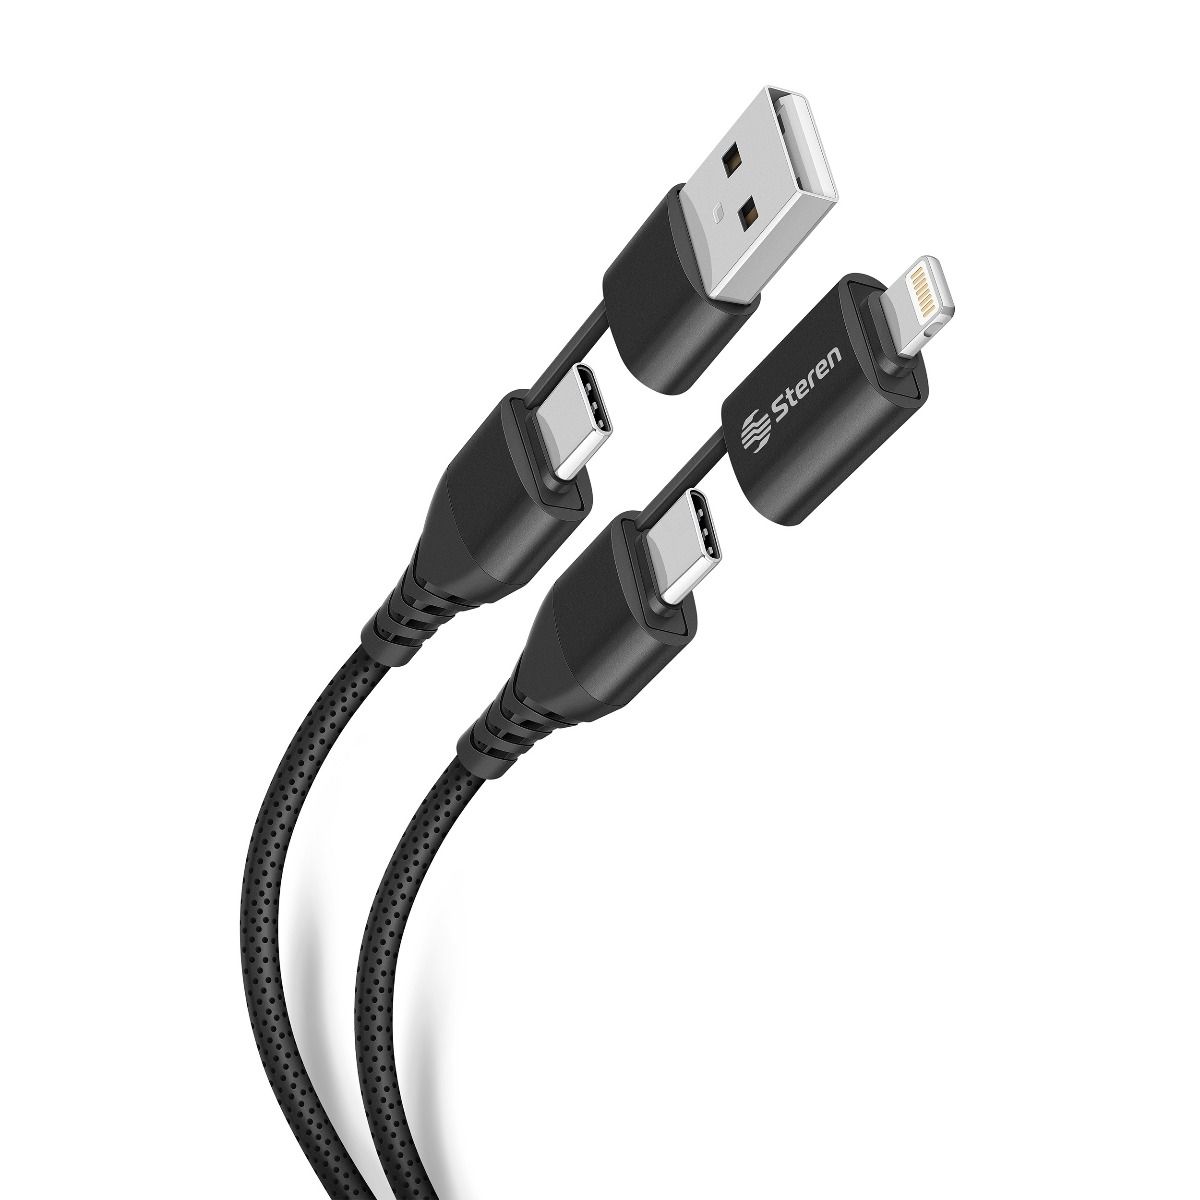 ADAPTADOR USB-C A LIGHTNING APPLE